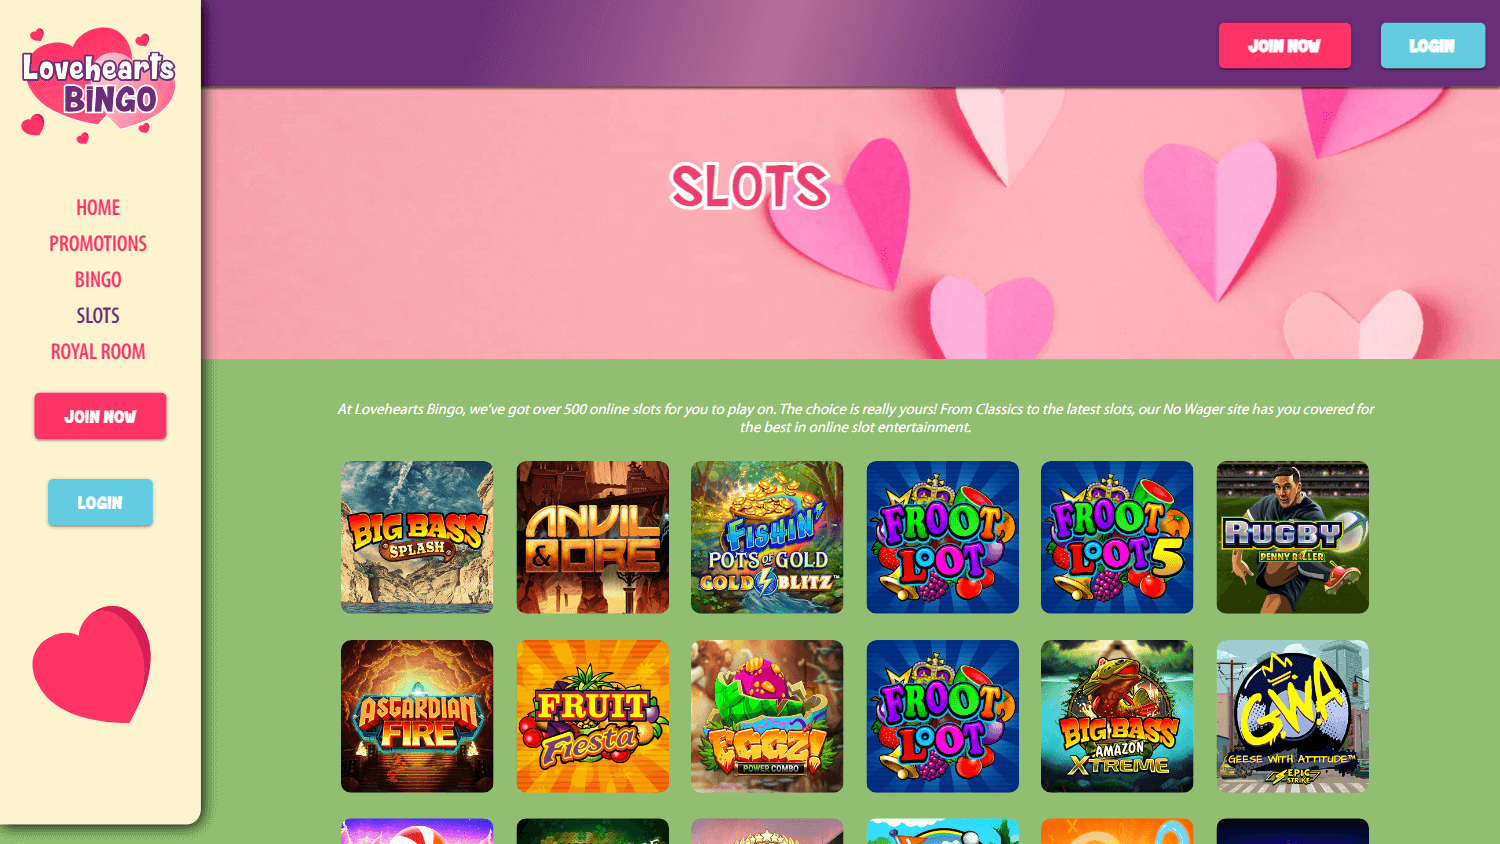 lovehearts_bingo_casino_game_gallery_desktop